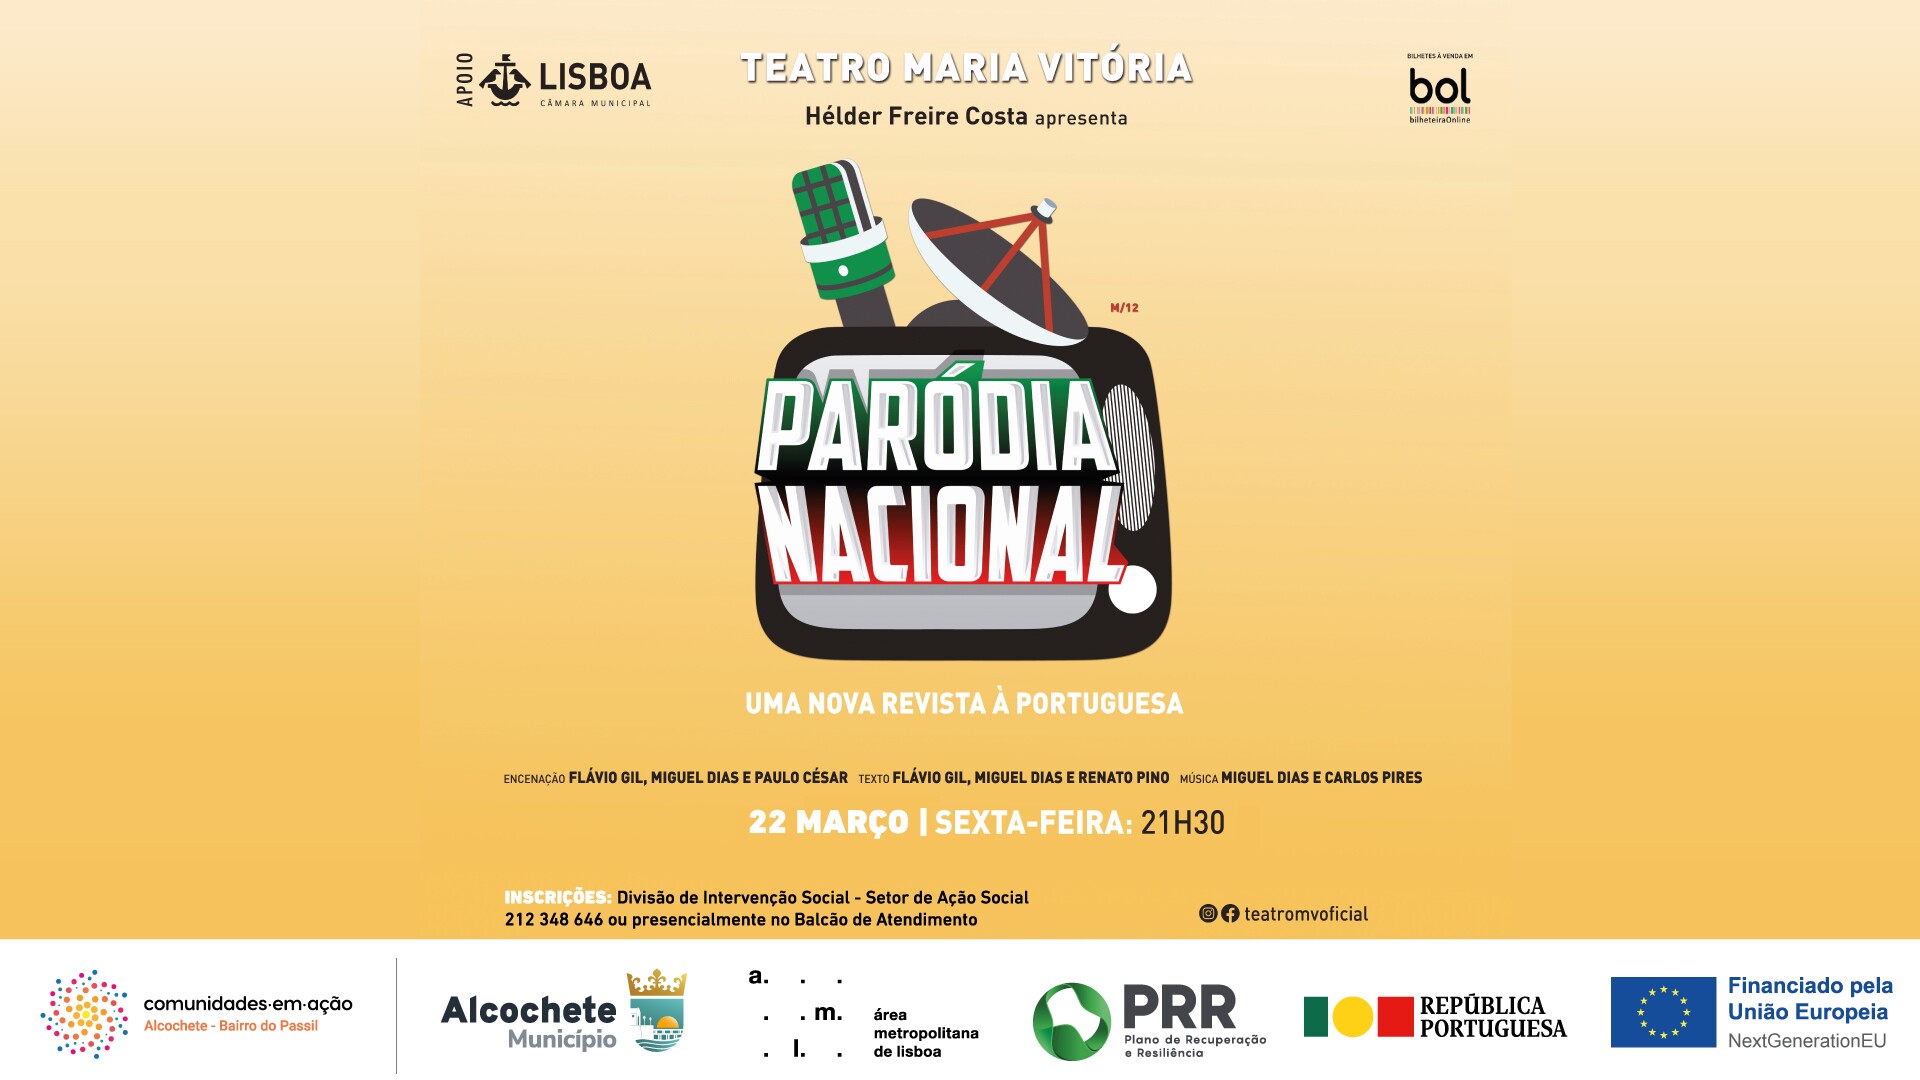  “Paródia Nacional” - Revista à Portuguesa